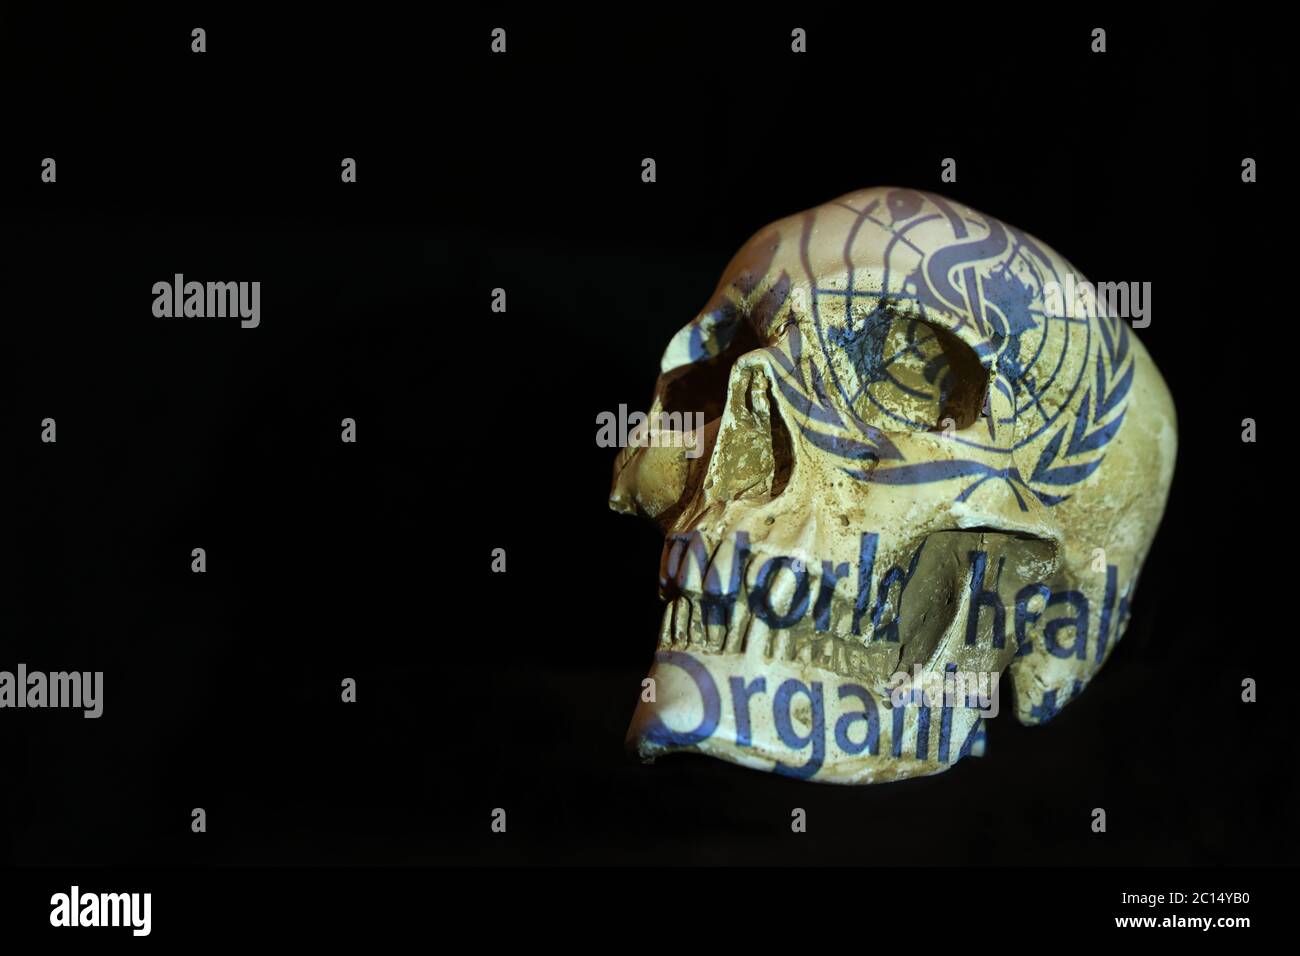 Un crâne isolé et un fond noir Uni avec le logo de l'Organisation mondiale de la Santé QUI a projeté dessus. Virus Corona covid-19 concept Banque D'Images